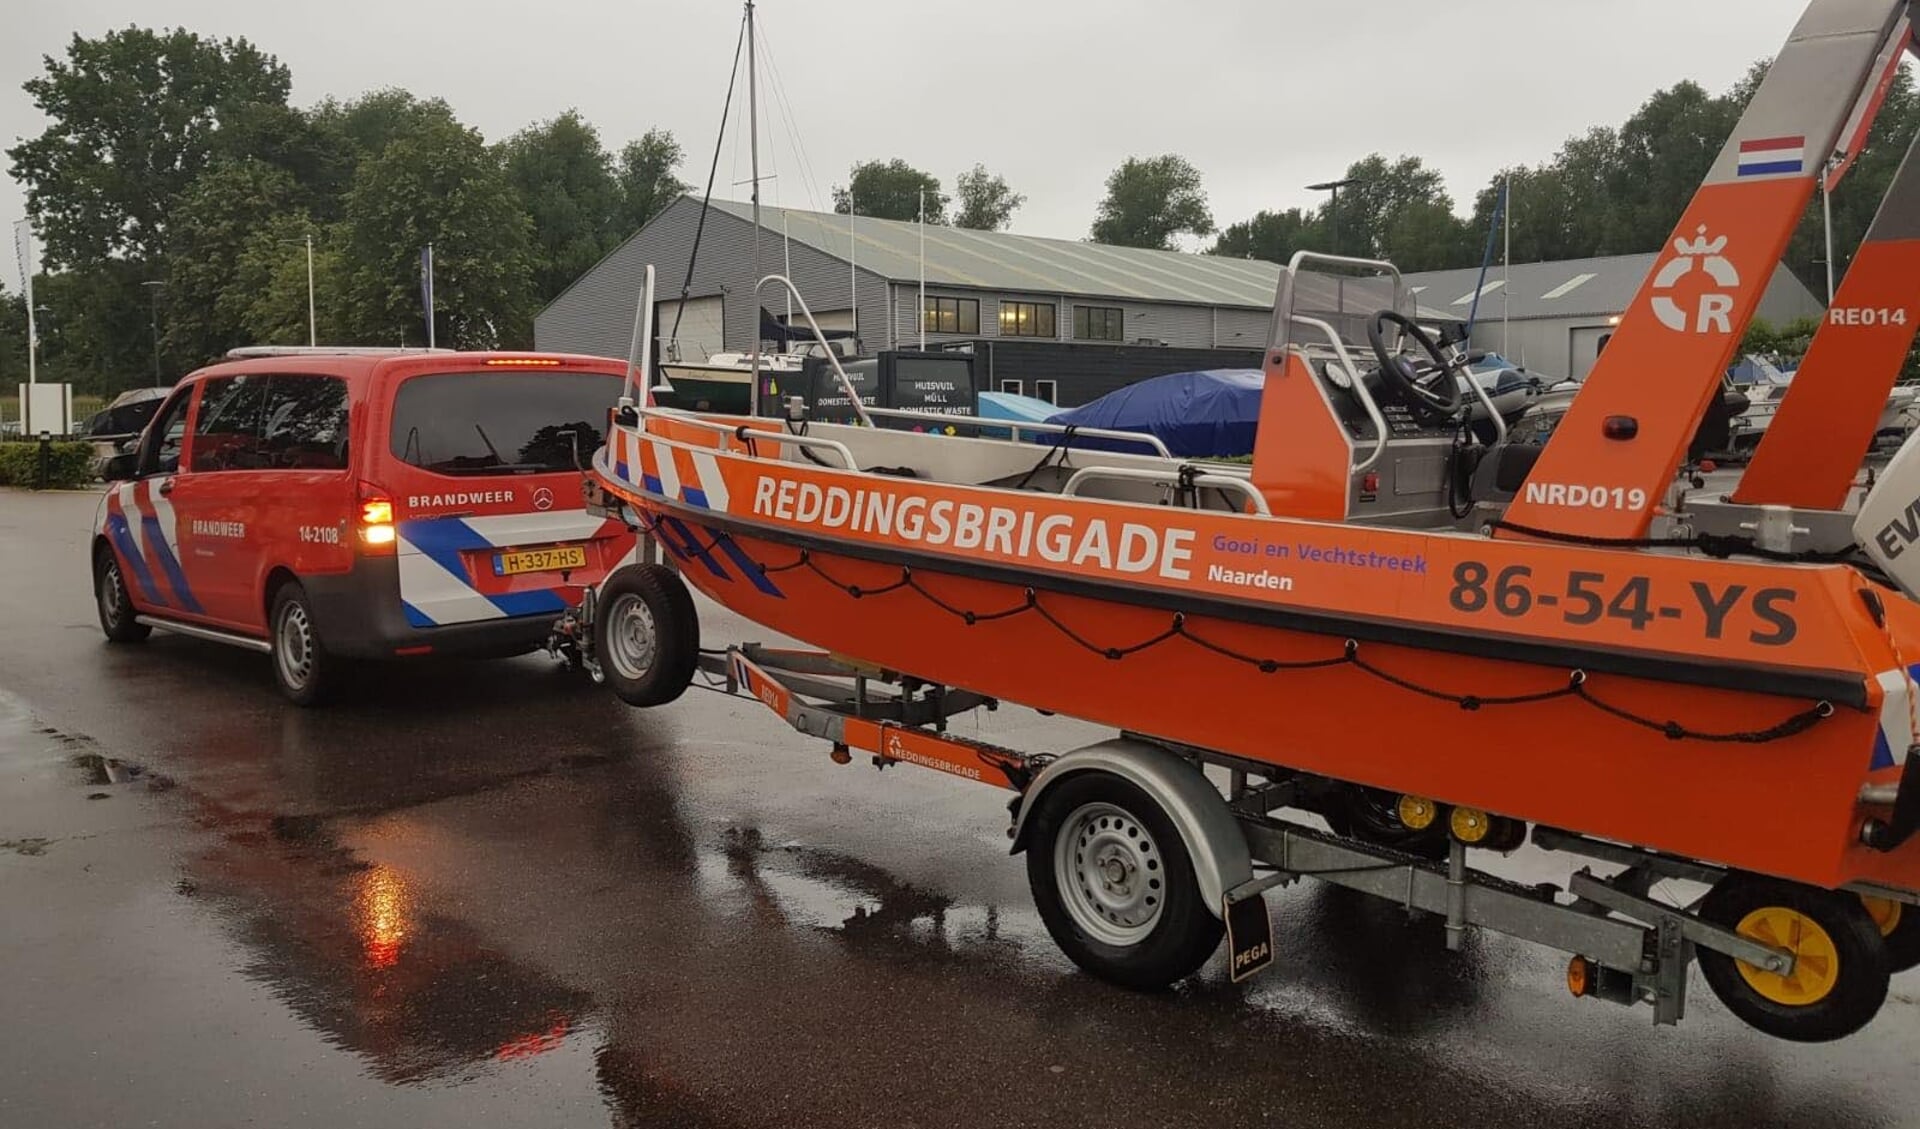 Drie lifeguards en twee brandweerlieden zijn vertrokken naar Limburg.